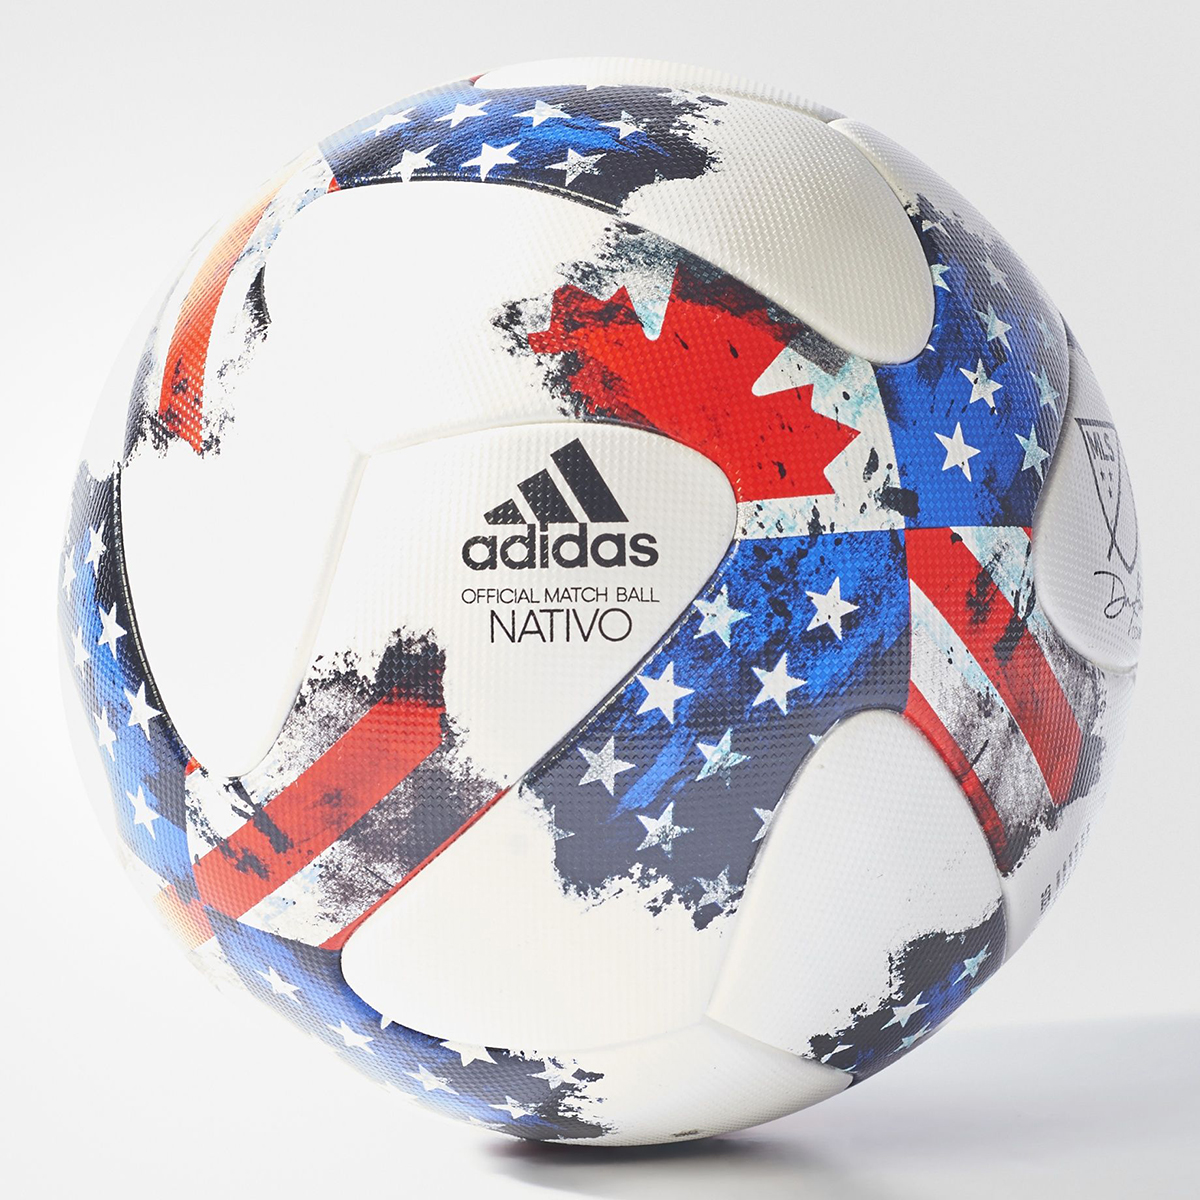 Interminable bádminton estático Nuevo balón adidas Nativo MLS 2017 - Marca de Gol